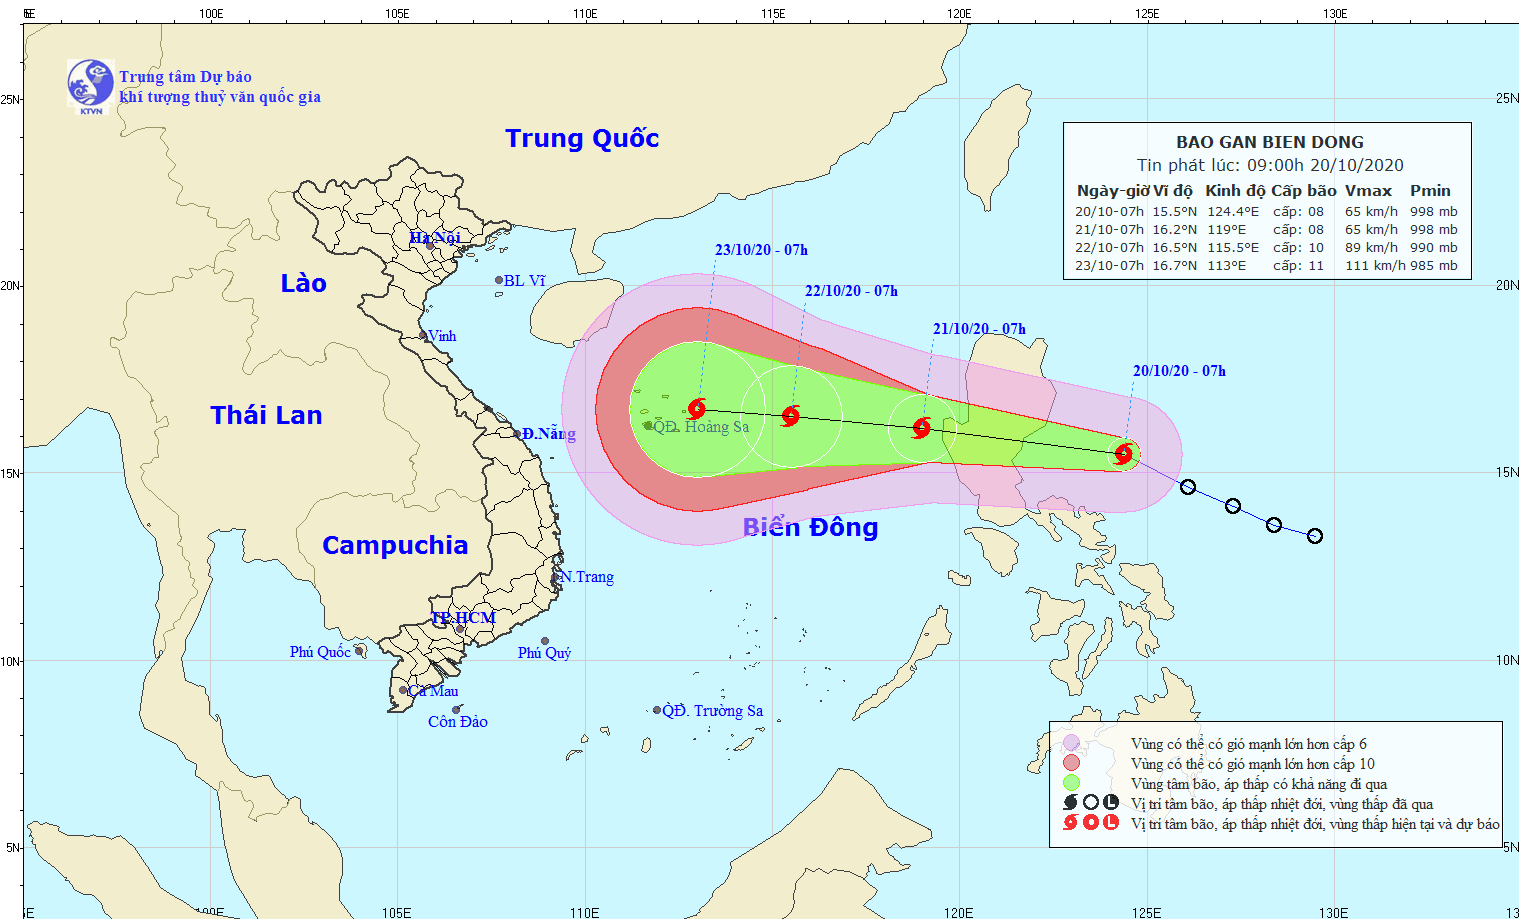 Cảnh báo thông tin giả mạo về cơn bão số 8 sắp vào biển Đông